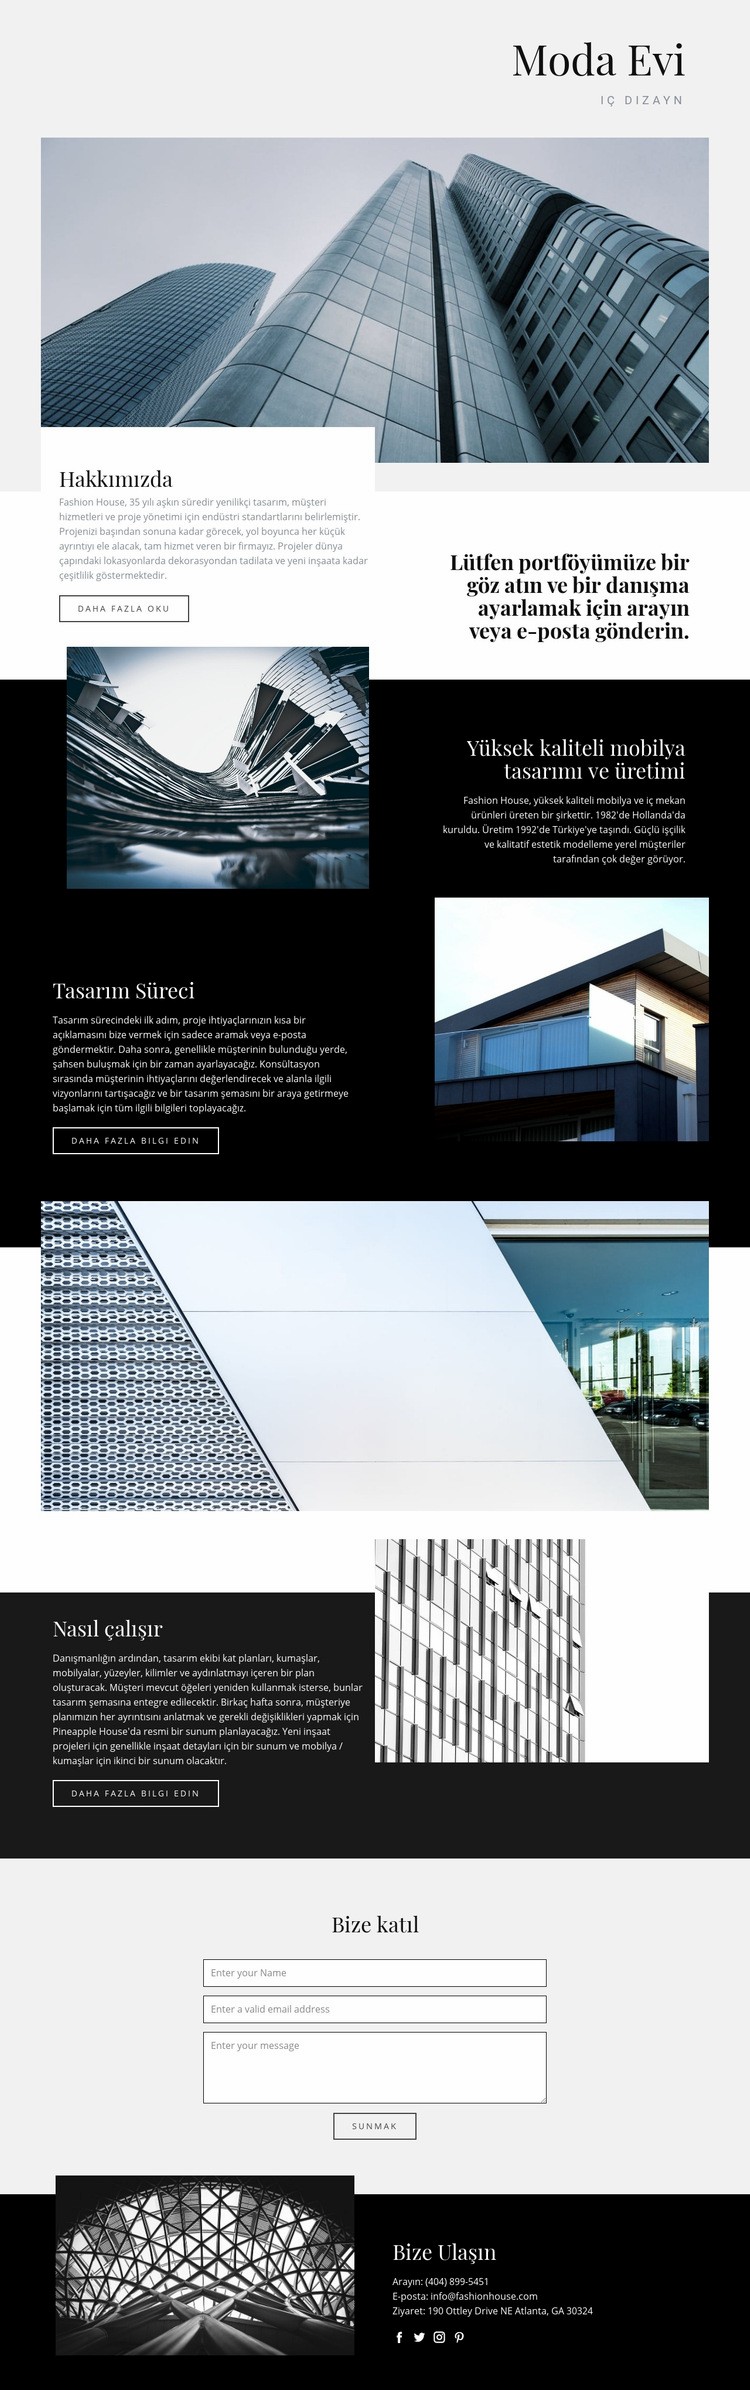 Moda Evi Web sitesi tasarımı